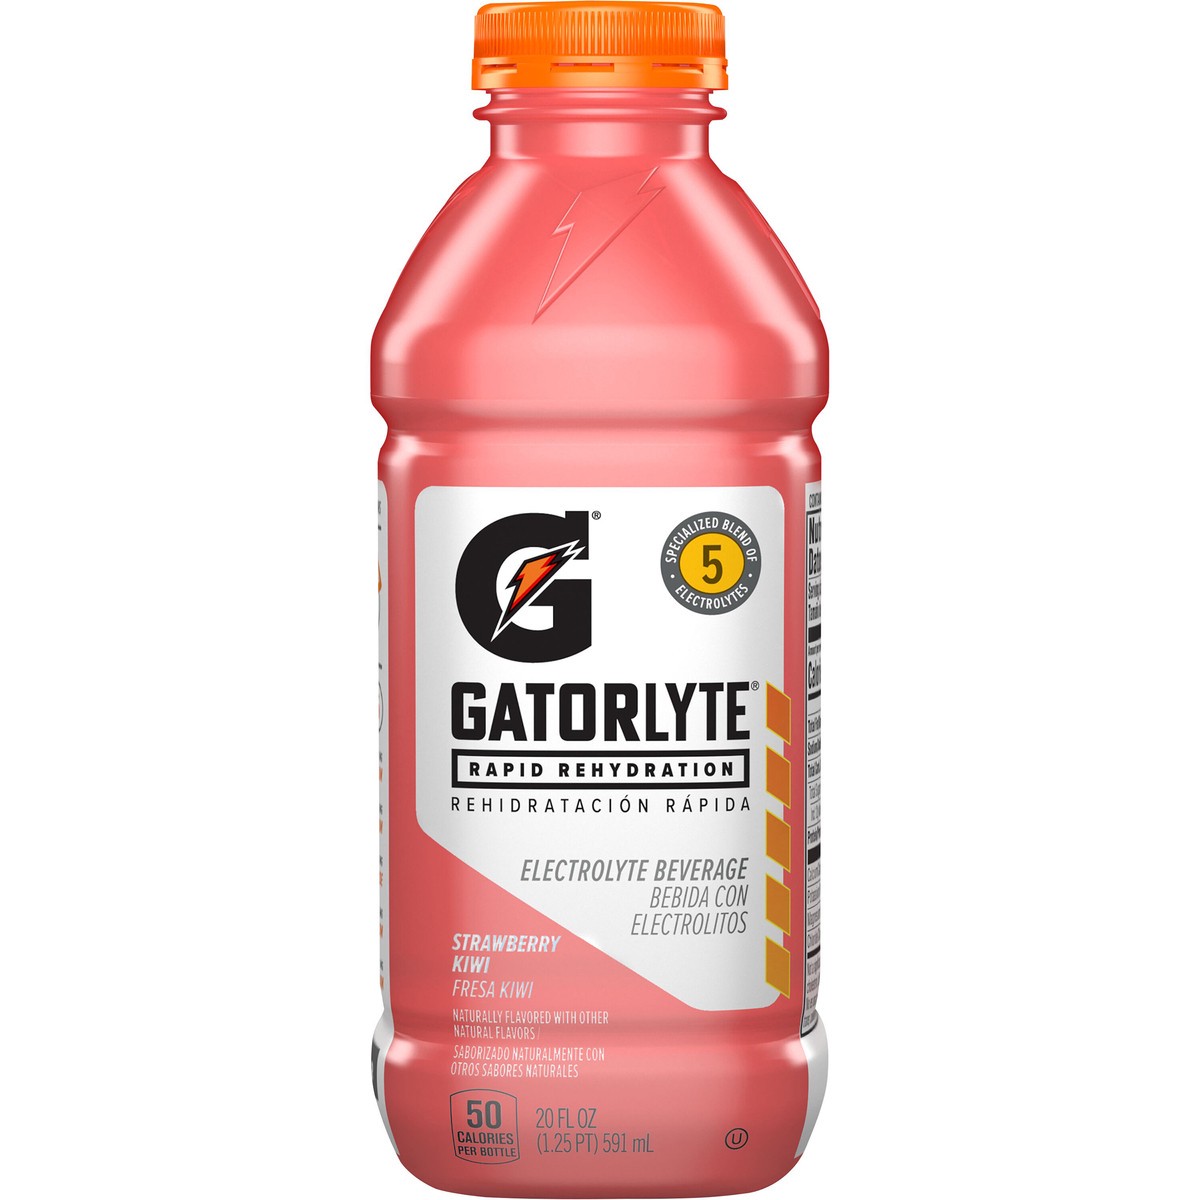 slide 1 of 1, Gatorlyte Rapid Rehydration Electrolyte Beverage Strawberry Kiwi 20 Fl Oz, 20 fl oz